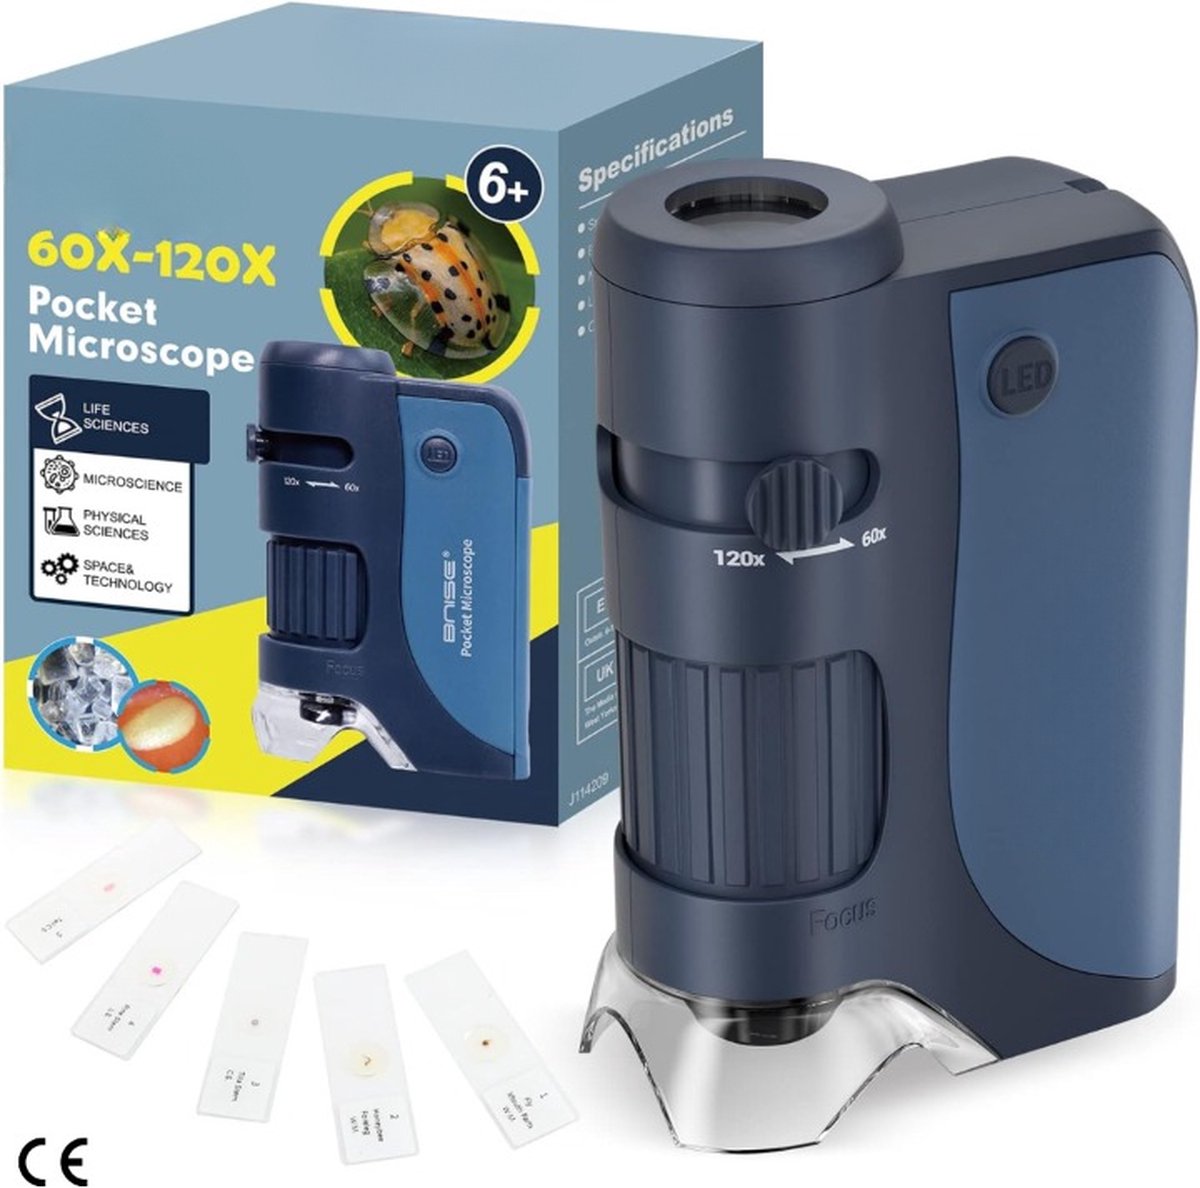 Handmicroscoop voor Kinderen - Draagbare Pocket Microscoop 60X-120X Zoom met LED Verlichting en 5 Microscoopglaasjes